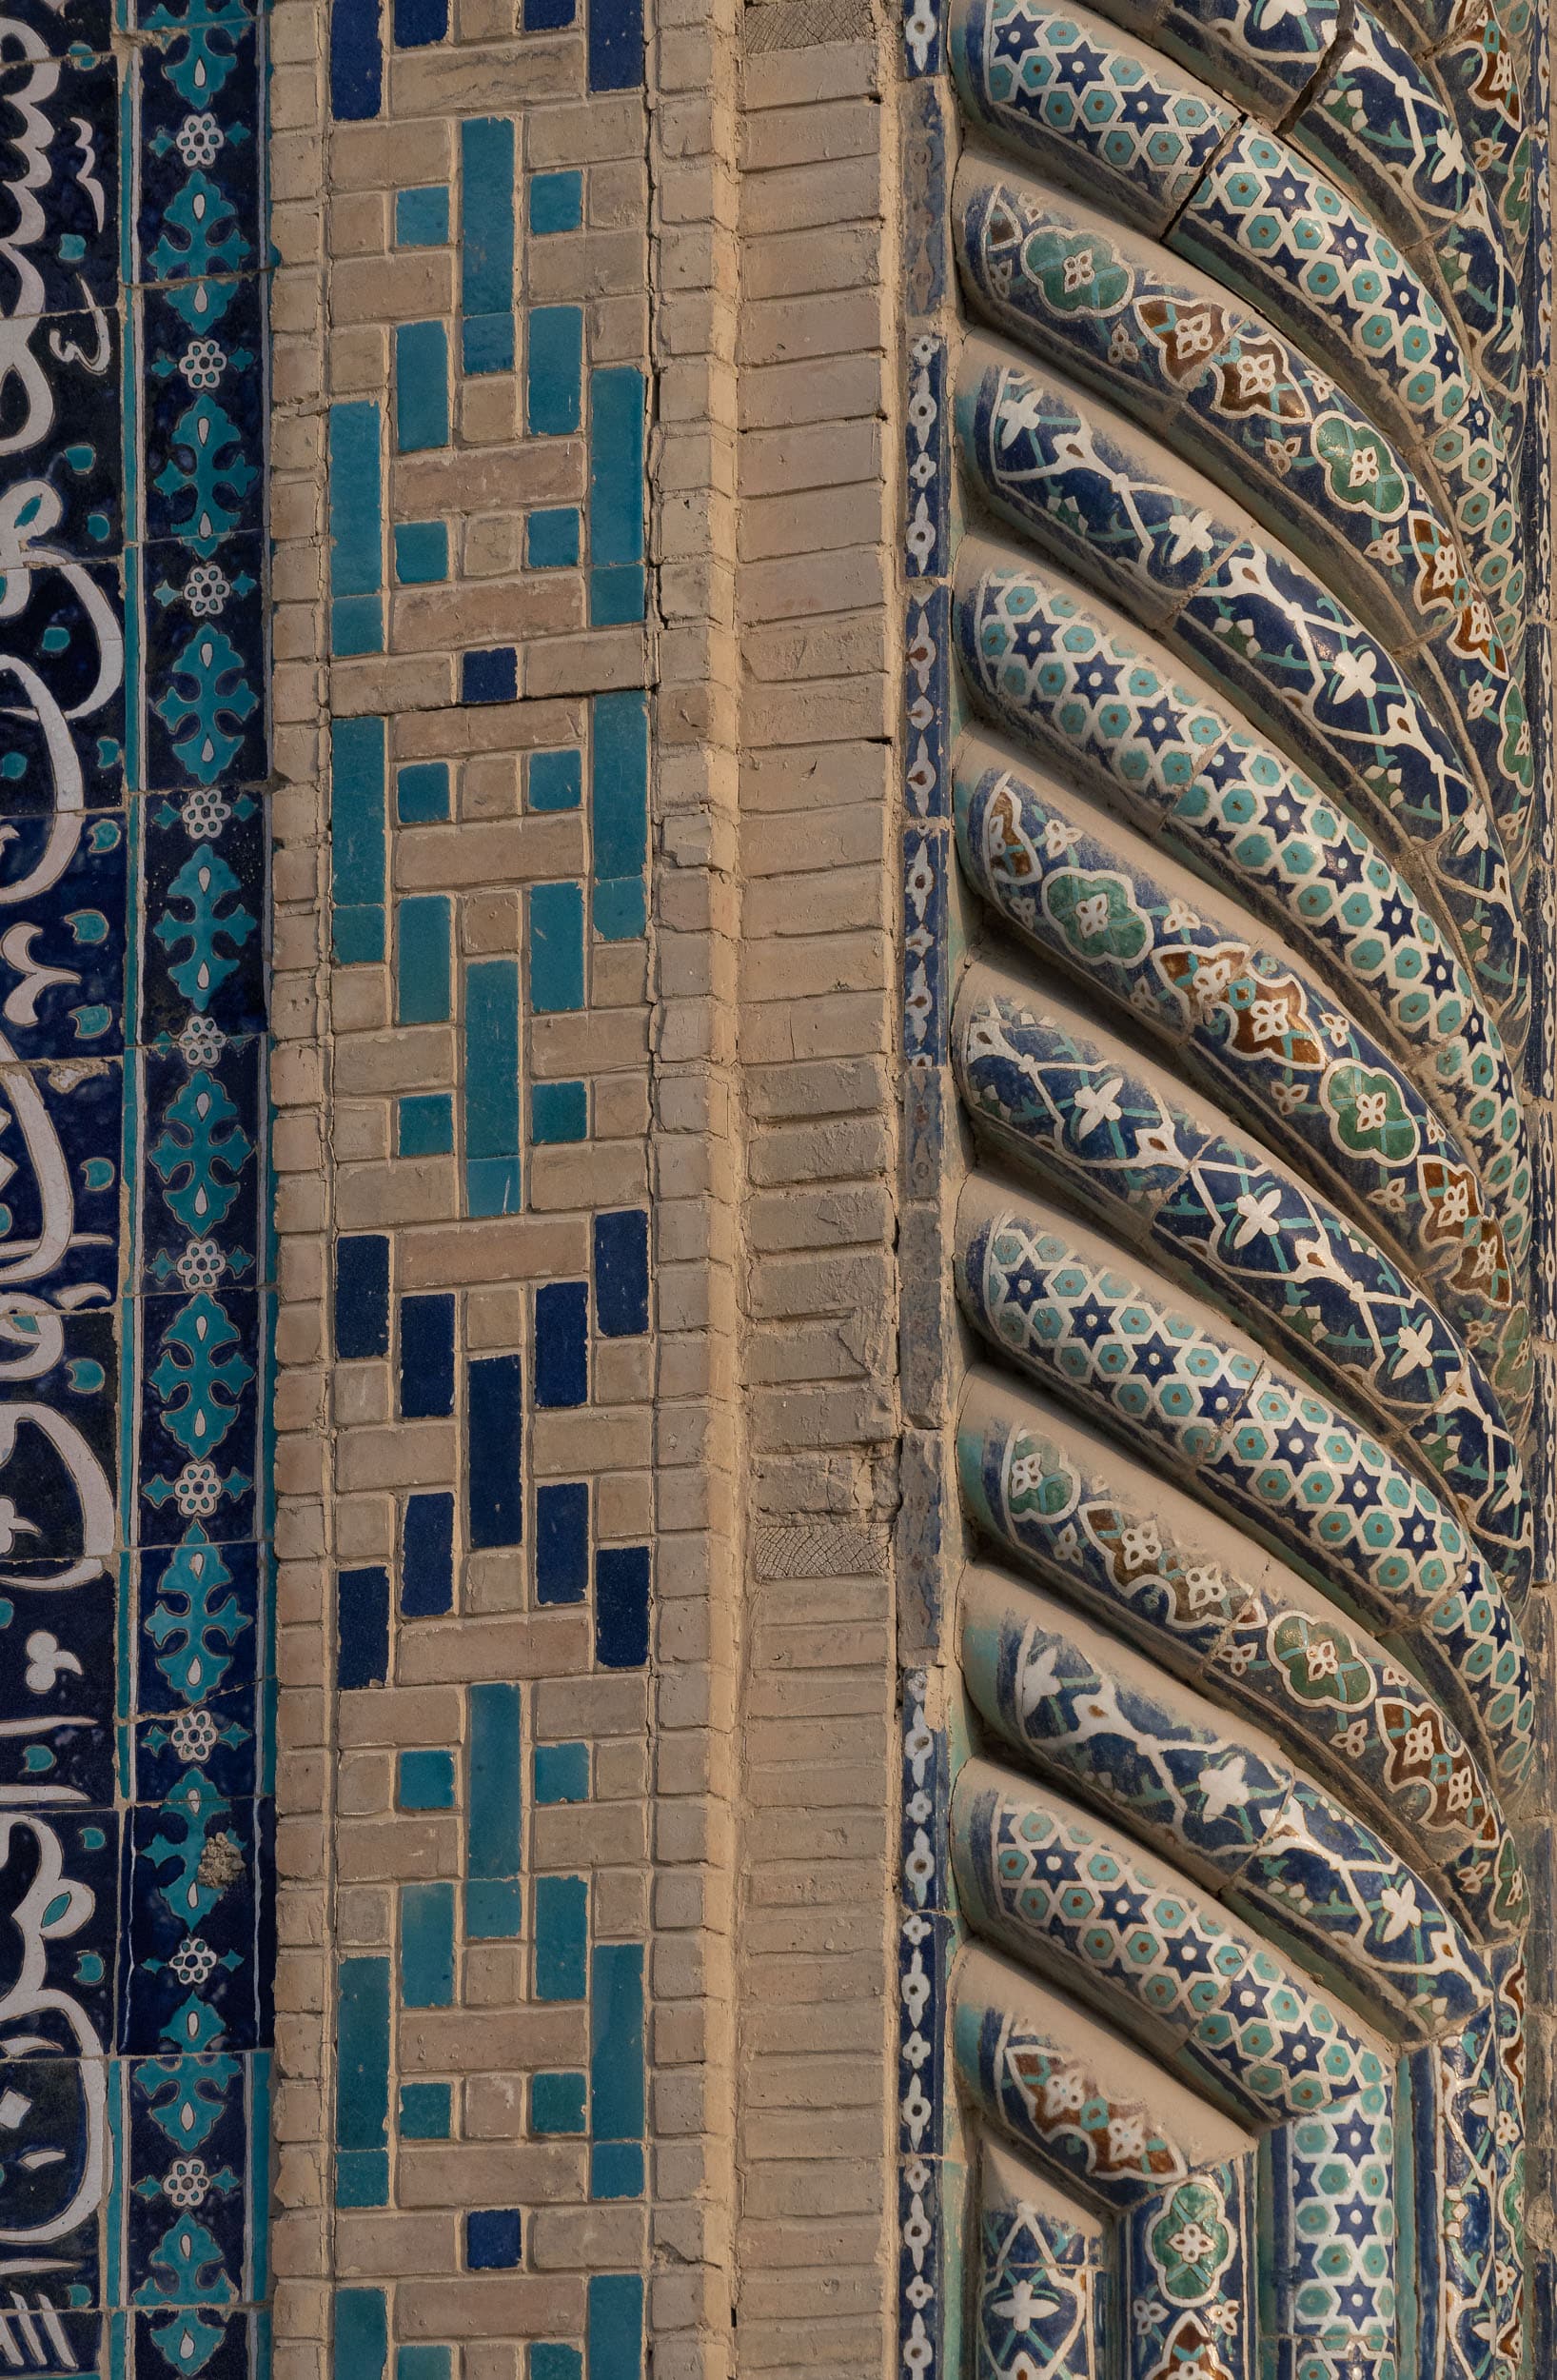 Mosaics of Uzbekistan